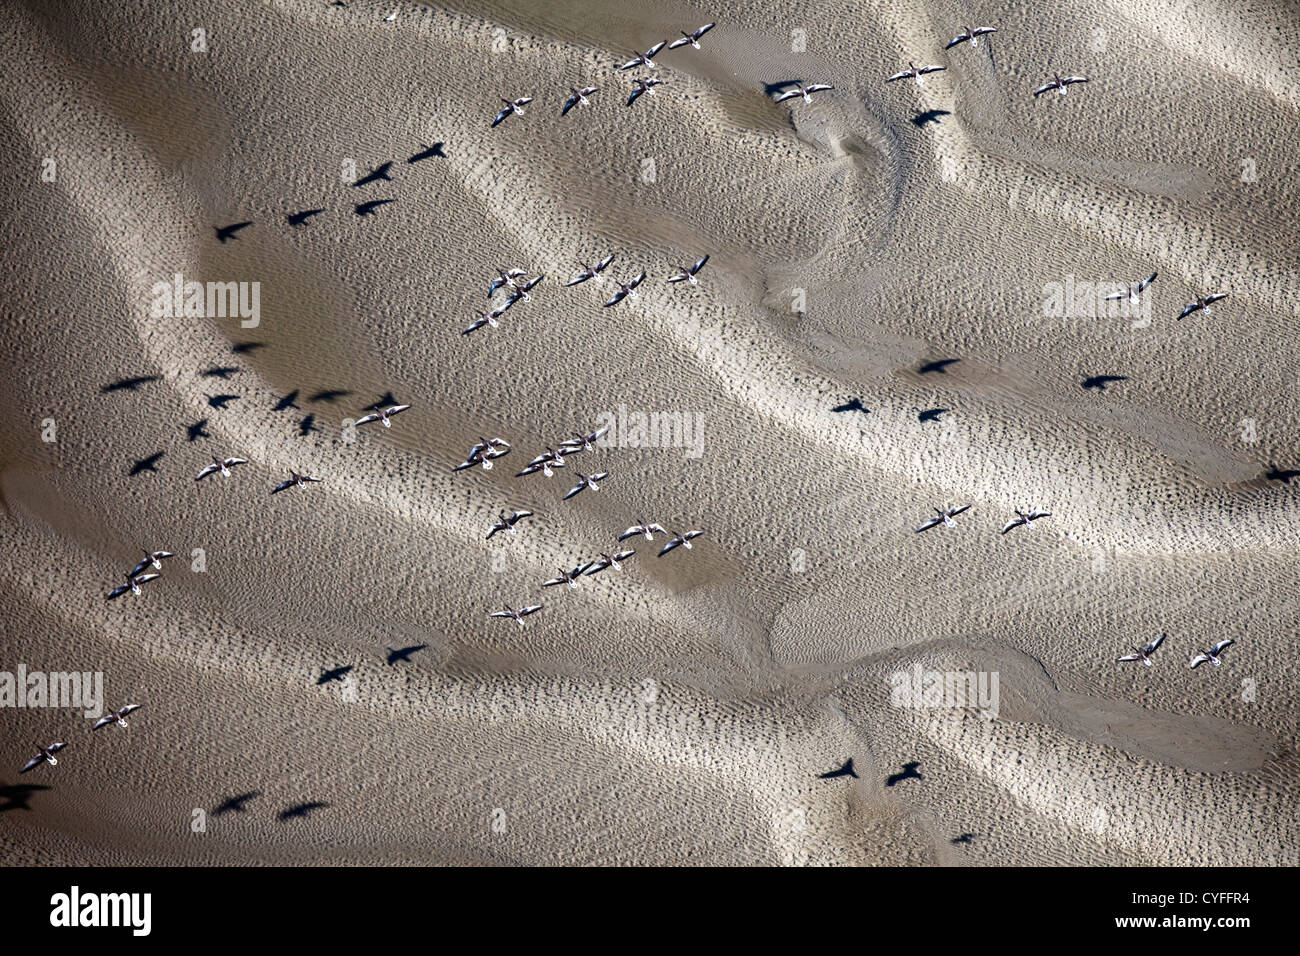 The Netherlands, Nieuw Namen, Westerschelde river. Tidal marshland. Greylag geese flying. Aerial. Stock Photo